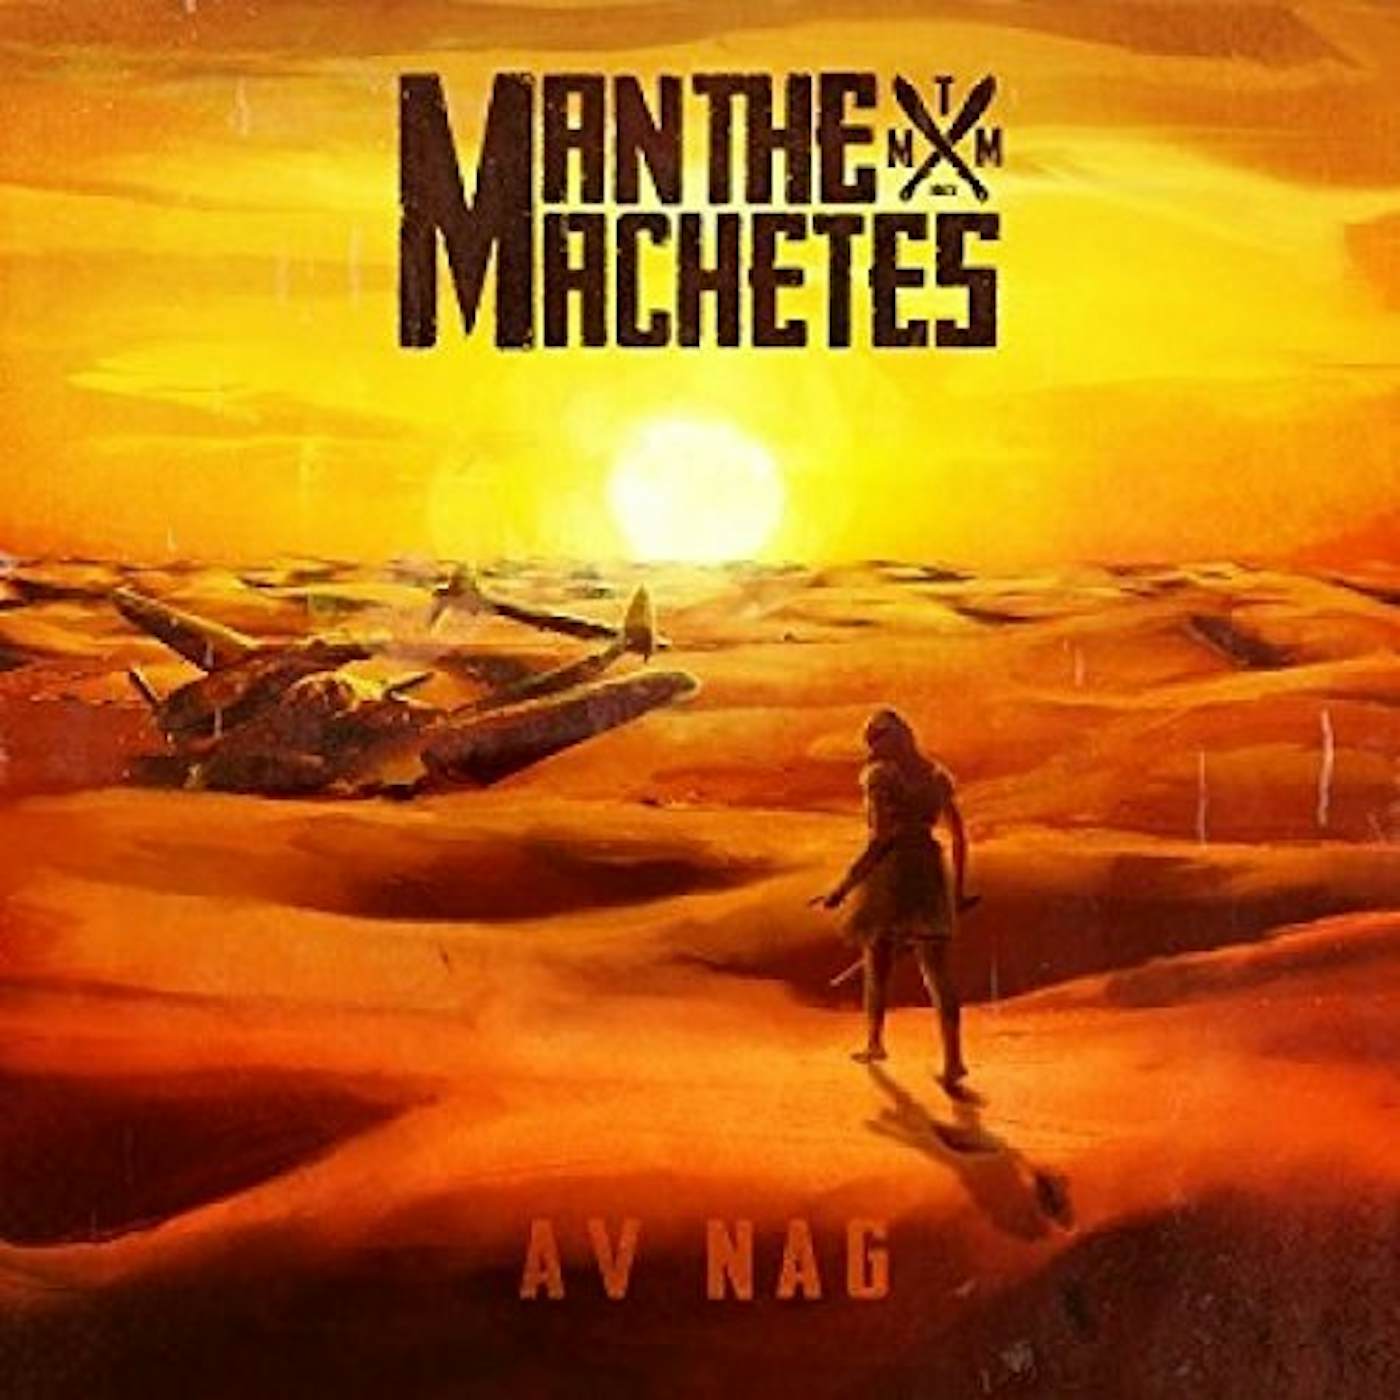 Man The Machetes Av Nag Vinyl Record